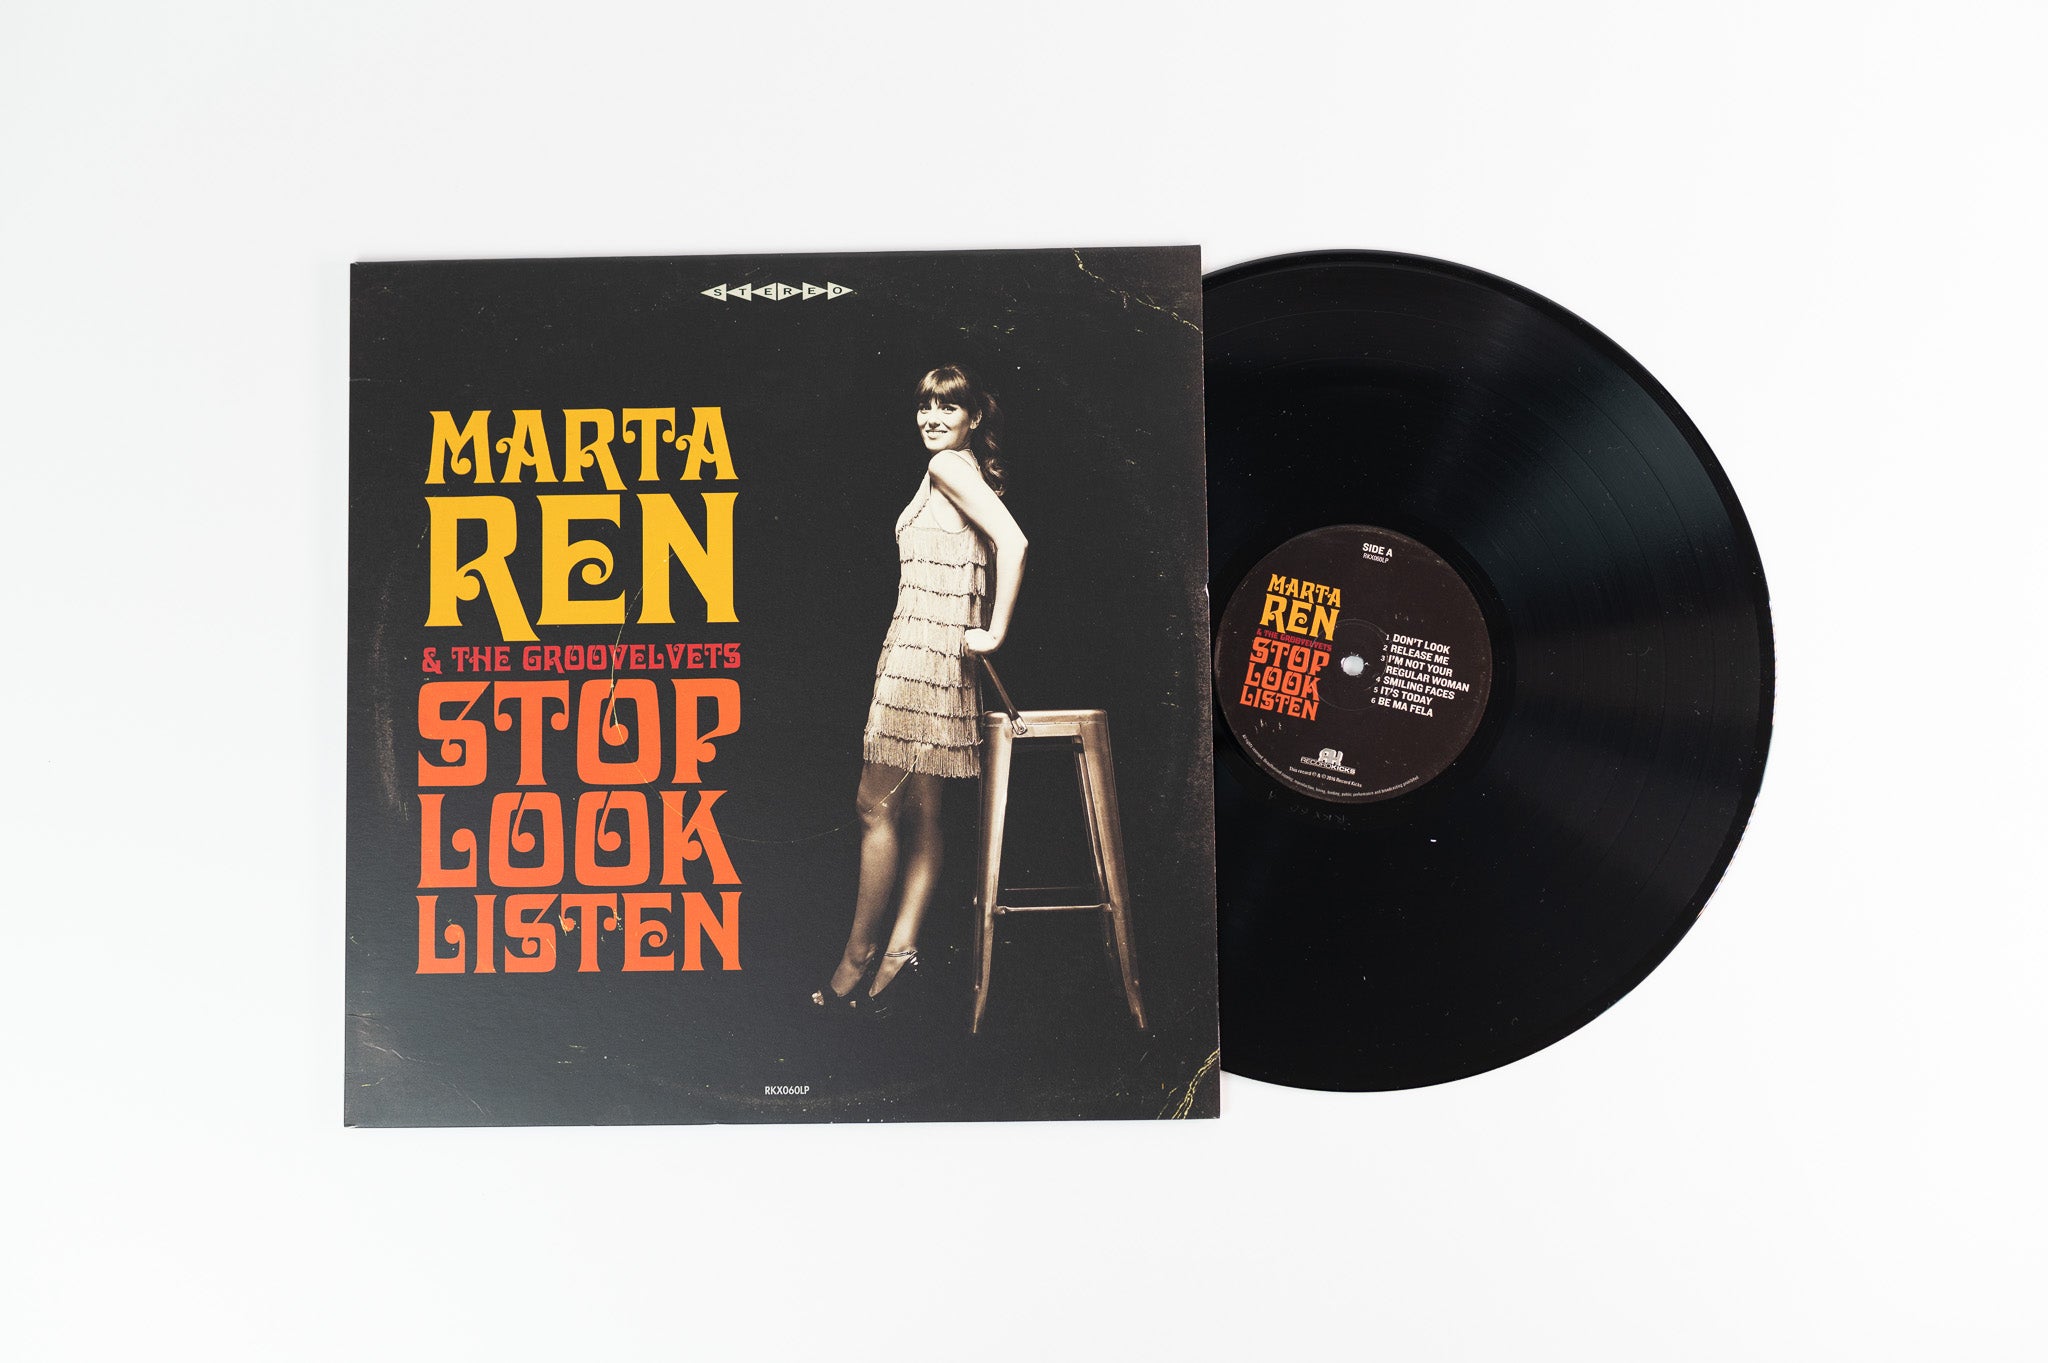 Marta Ren - Stop Look Listen on Record Kicks